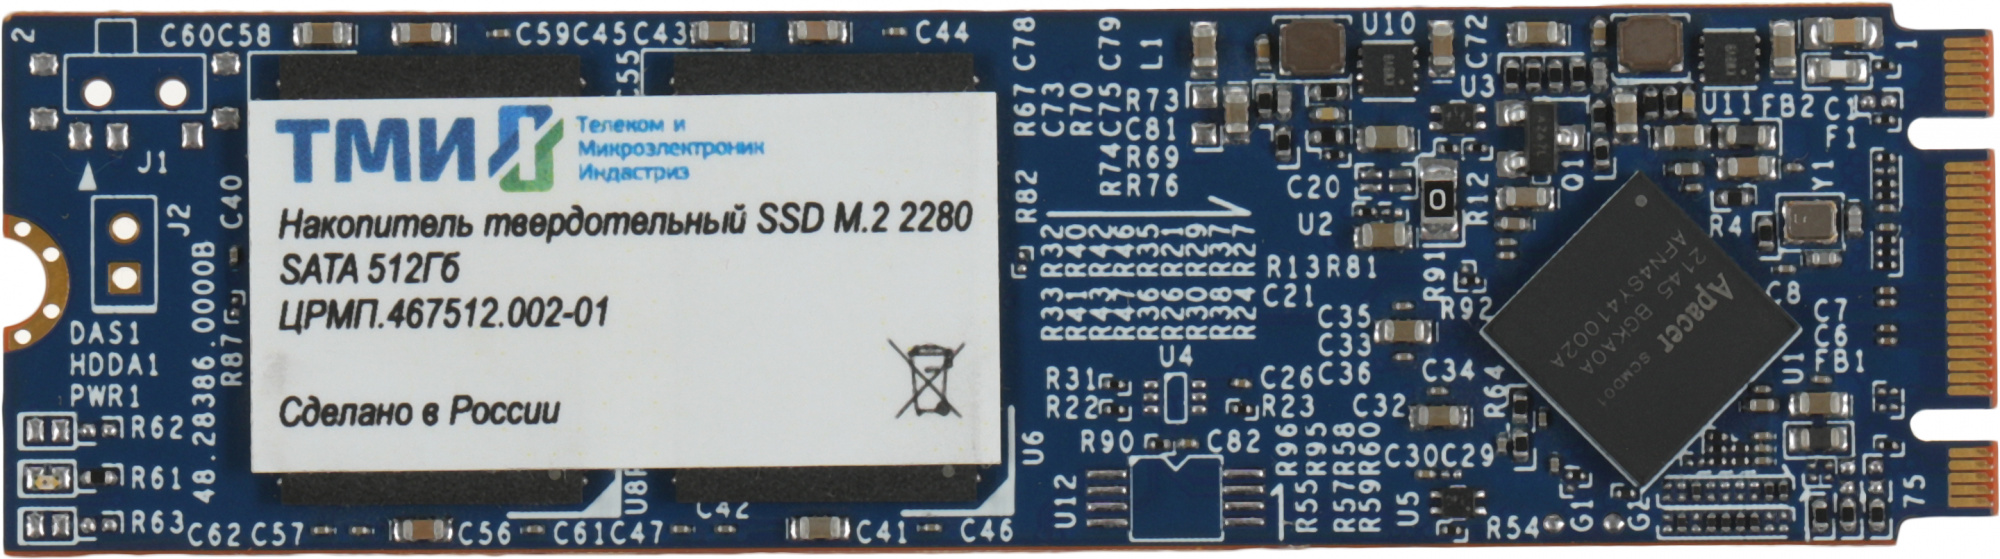 SSD   .467512.002-01 512, M.2 2280, SATA III,  M.2